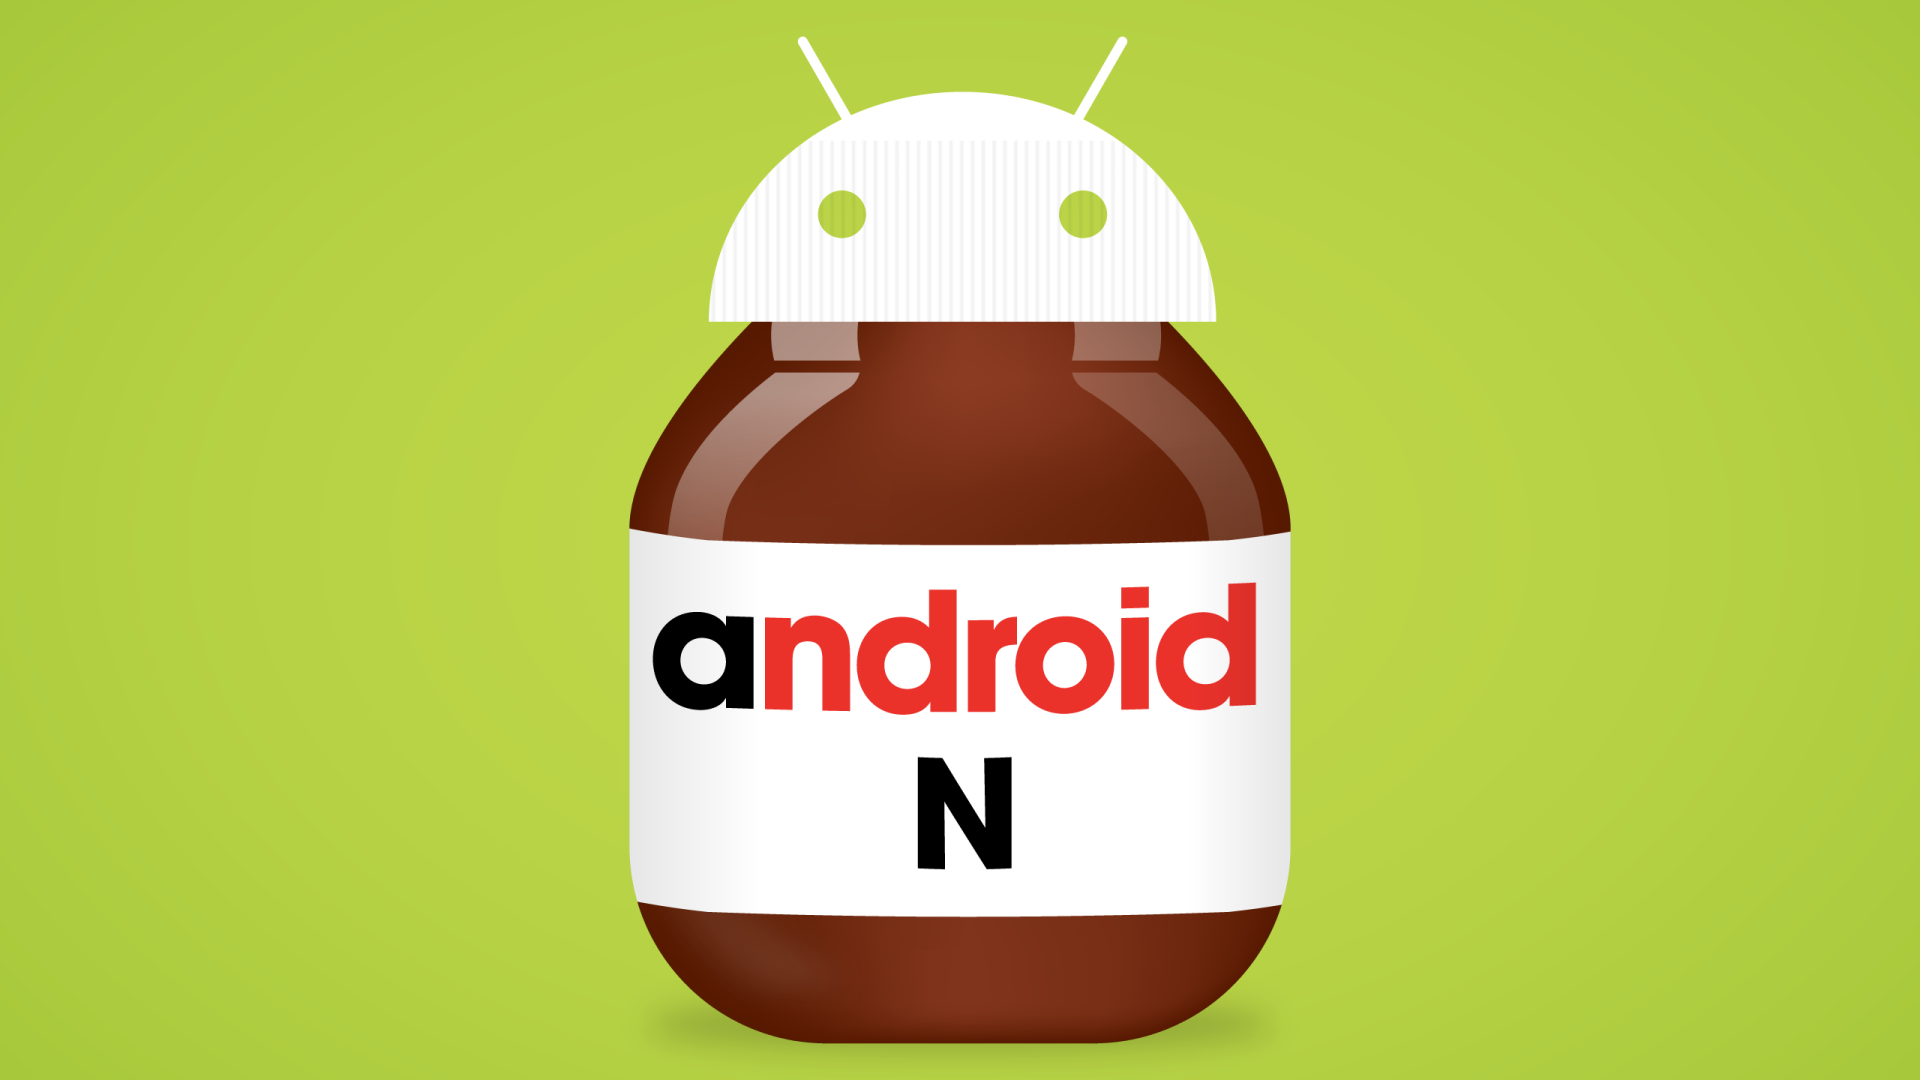 ขนมใหม่มาแล้ว! คาด Android N จะได้ชื่อว่า Nutella